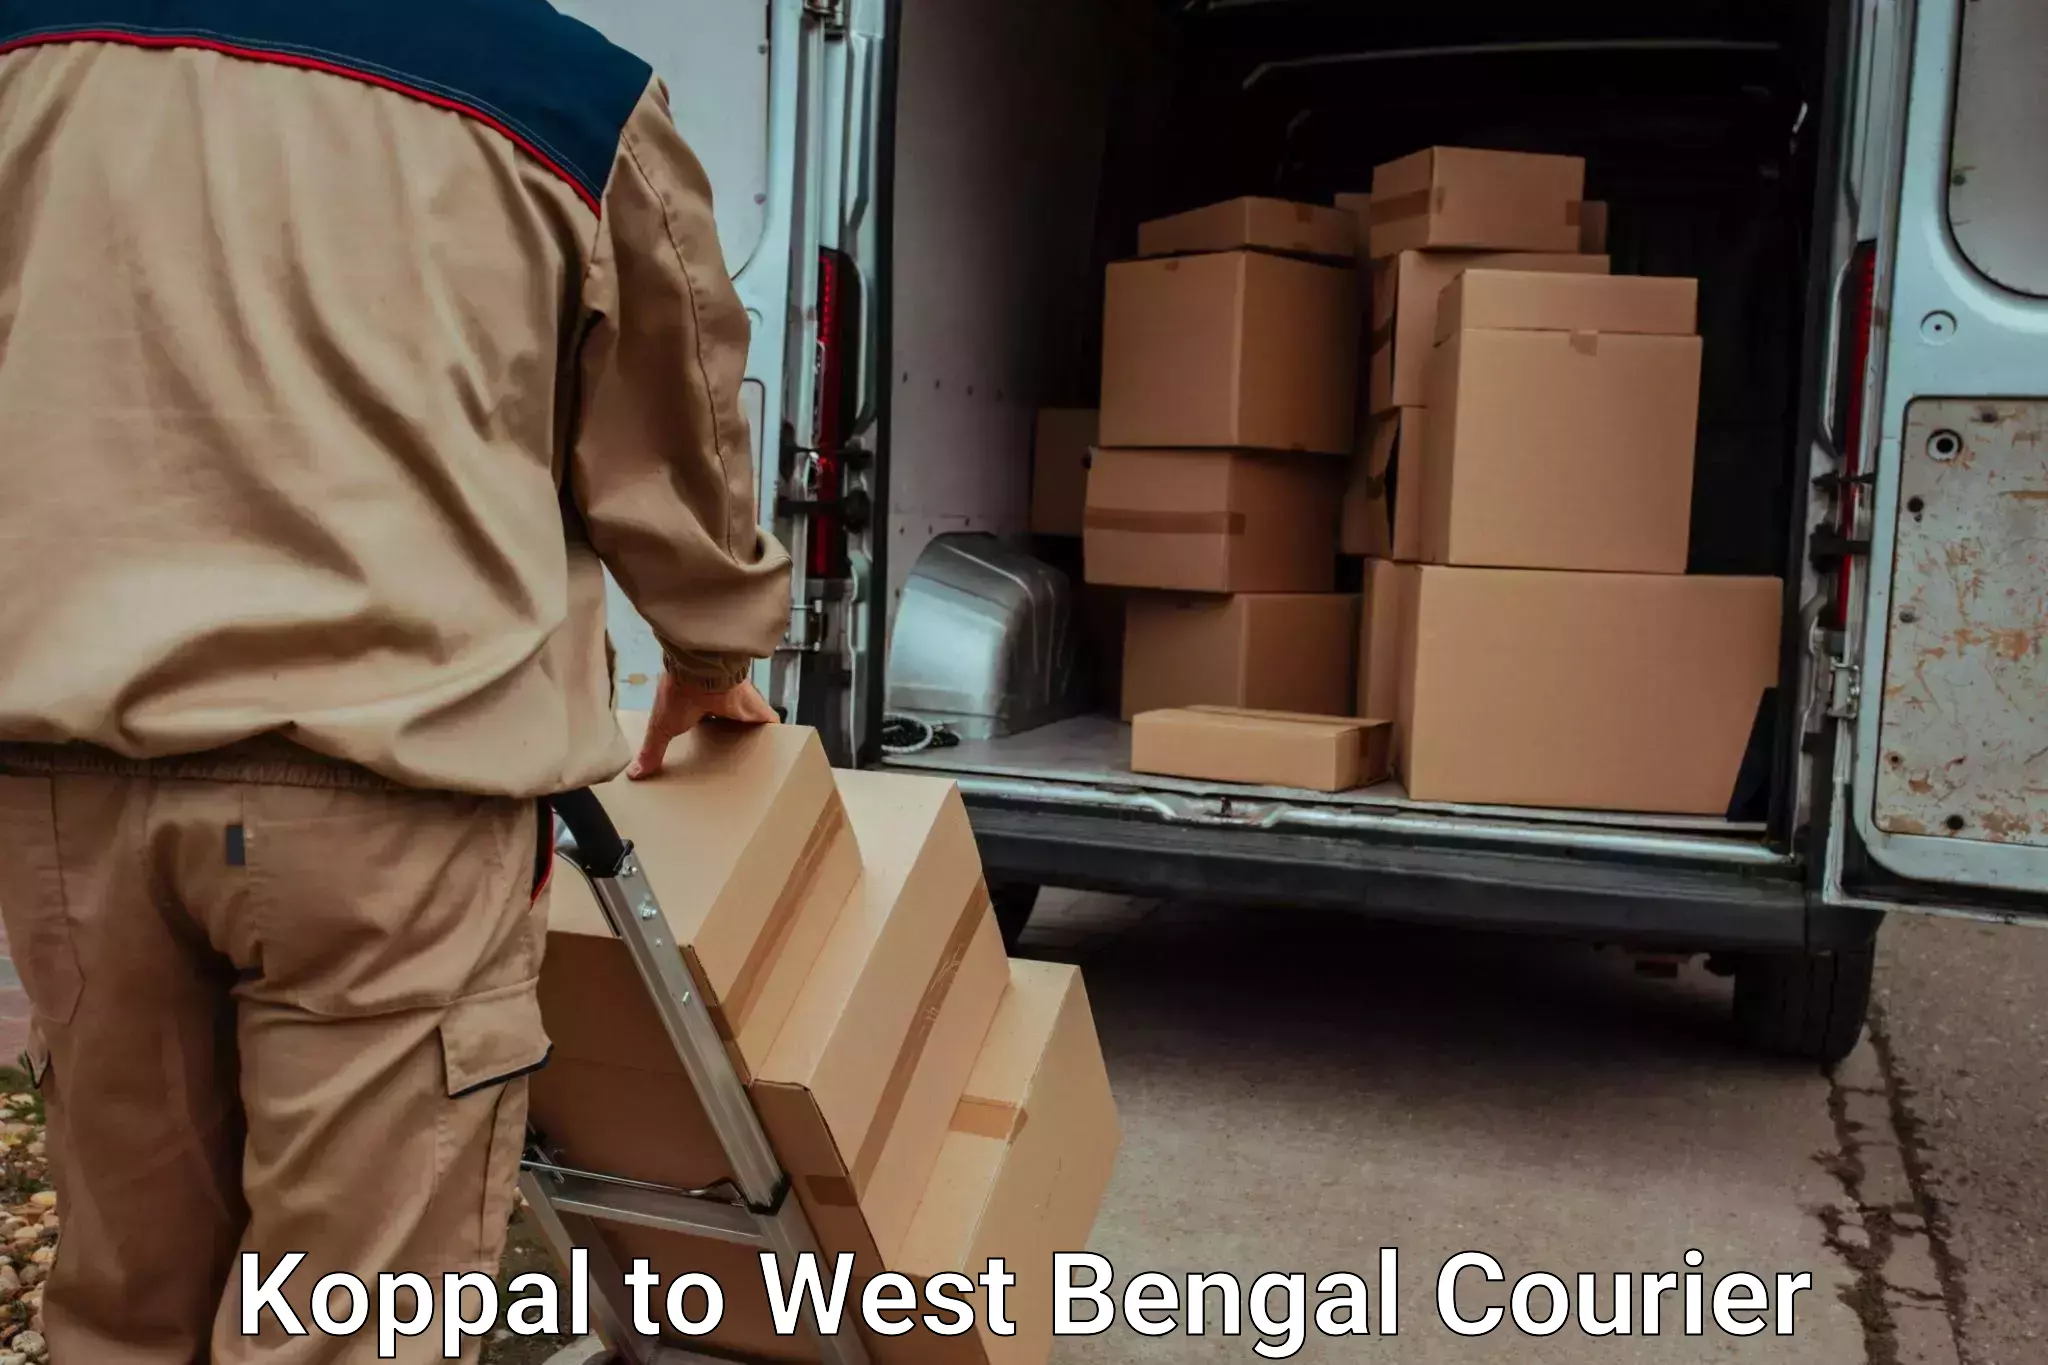 Furniture moving experts Koppal to Bongaon